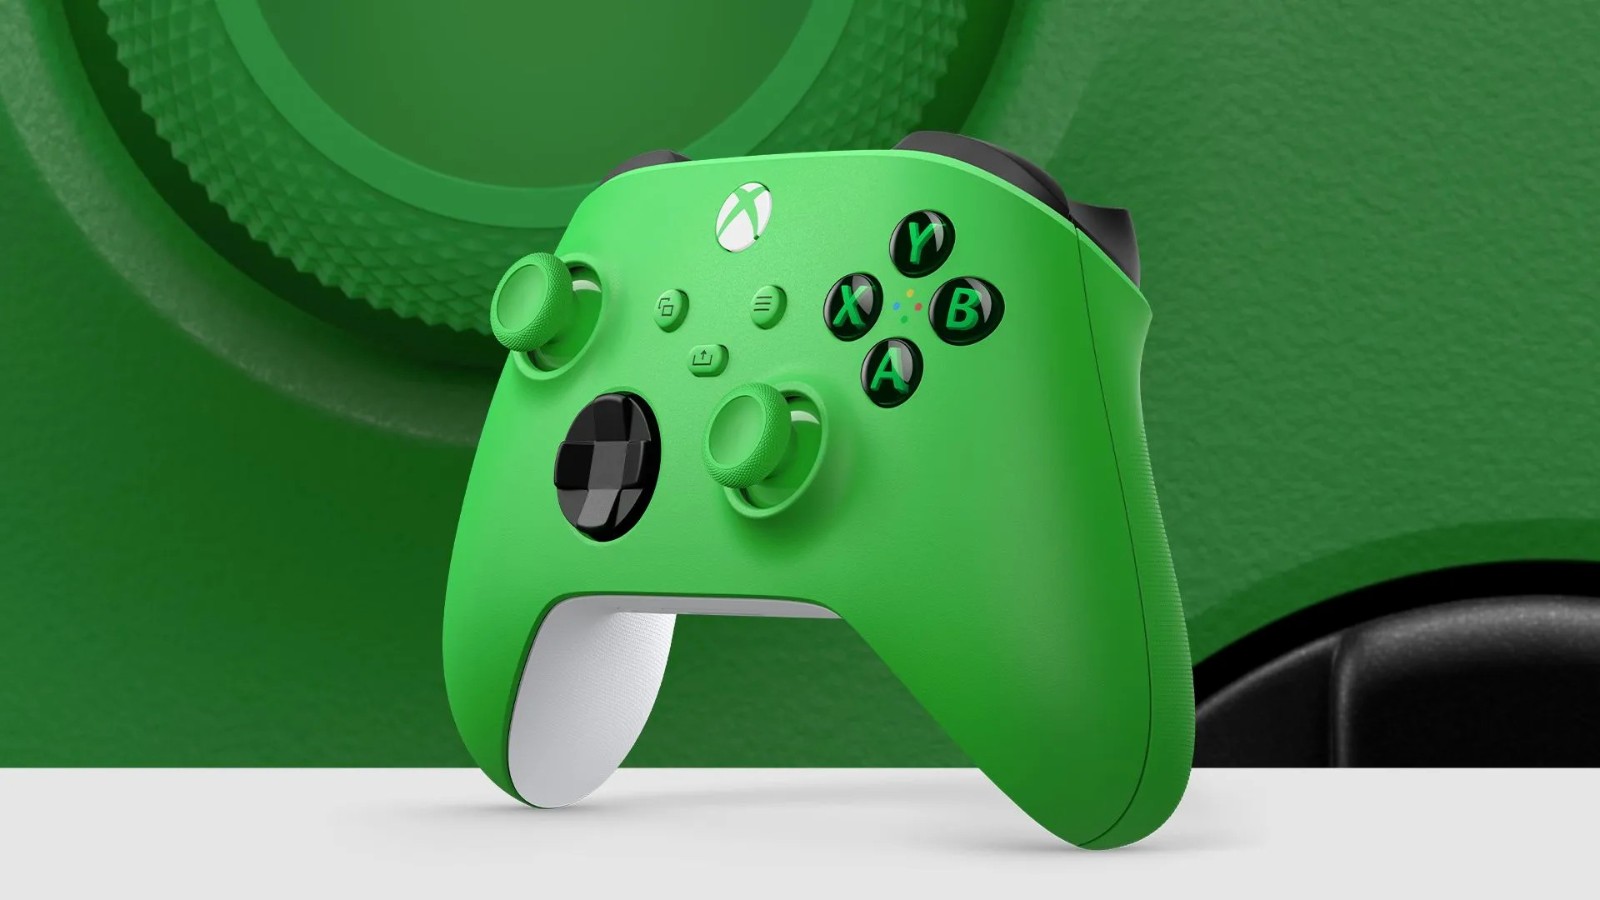 Xbox手柄新配色“青森绿” 国行版3月21日推出